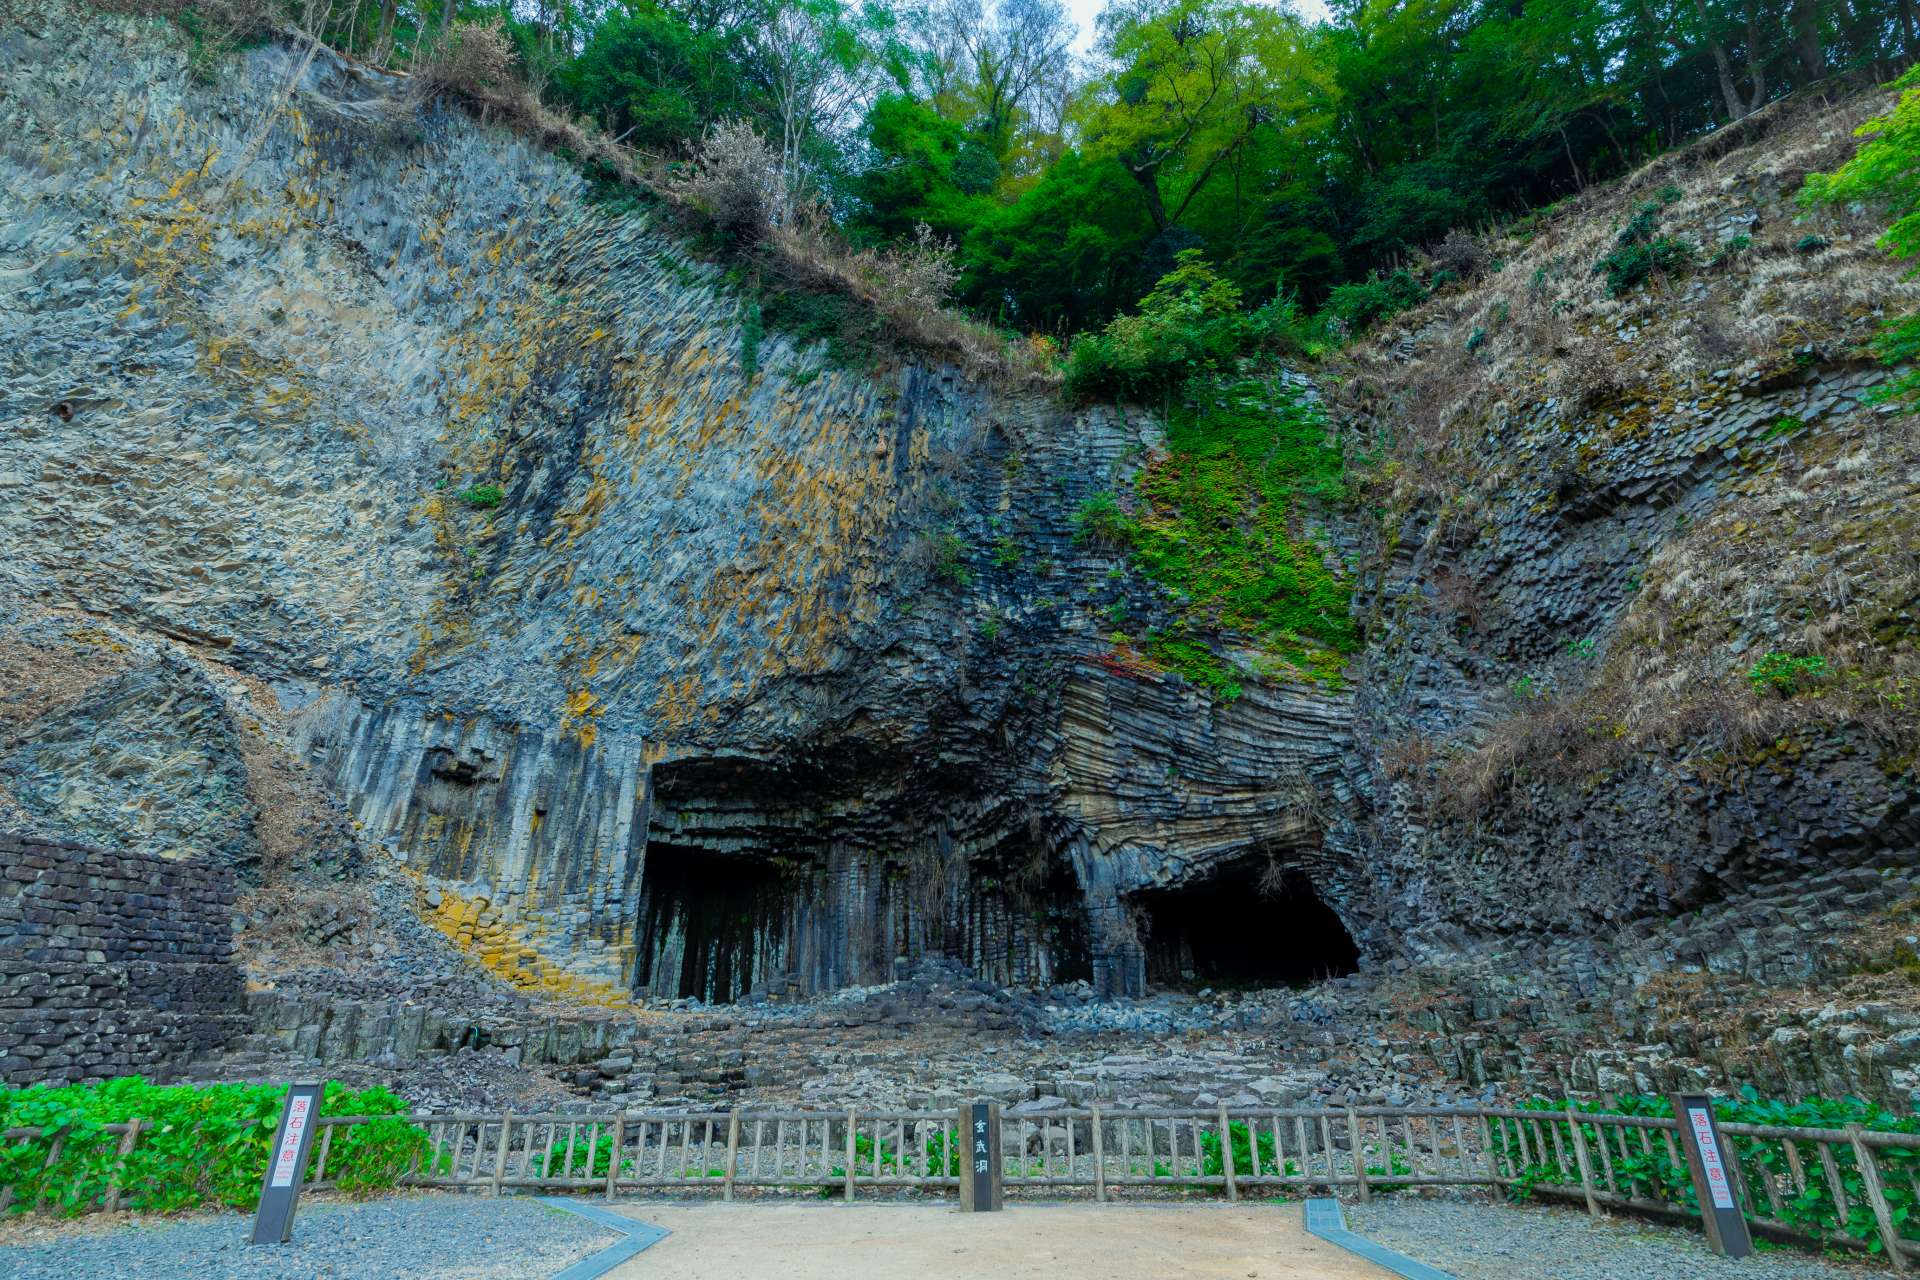 La grotte de Genbudo se dresse devant nous, le joint colonnaire, qui ressemble à une magnifique œuvre d'art, est à couper le souffle !